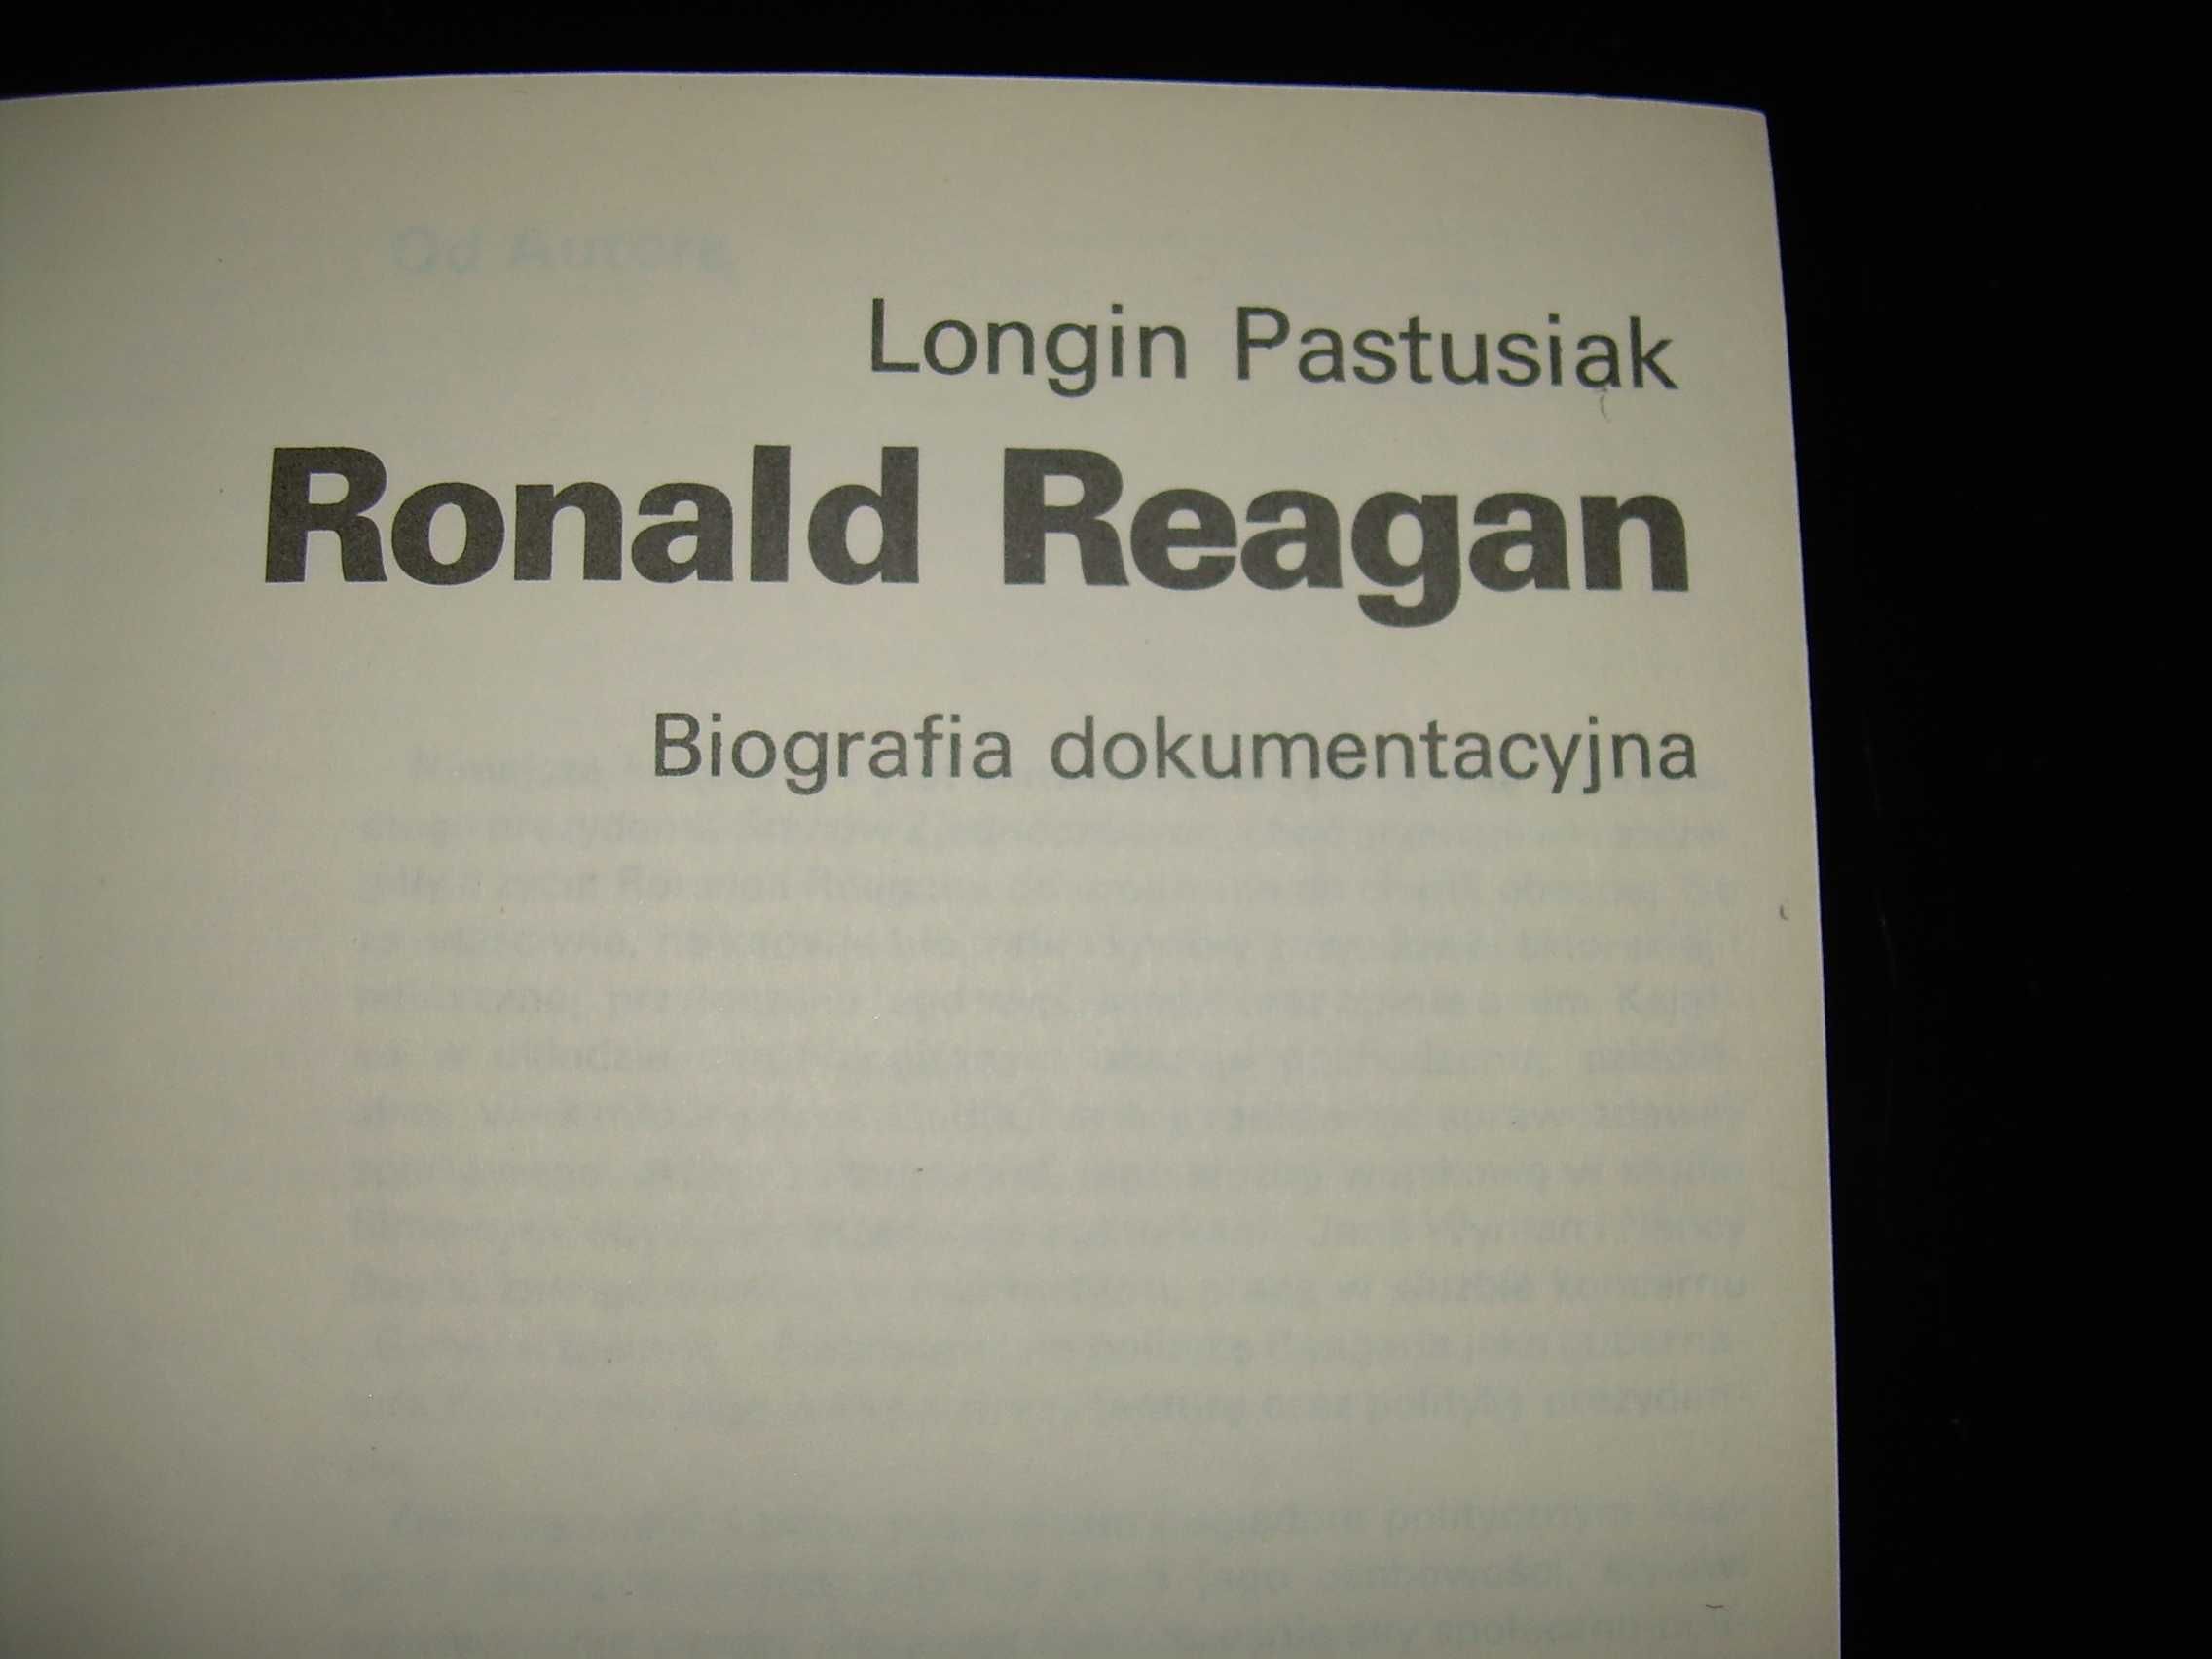 Ronald Reagan biografia